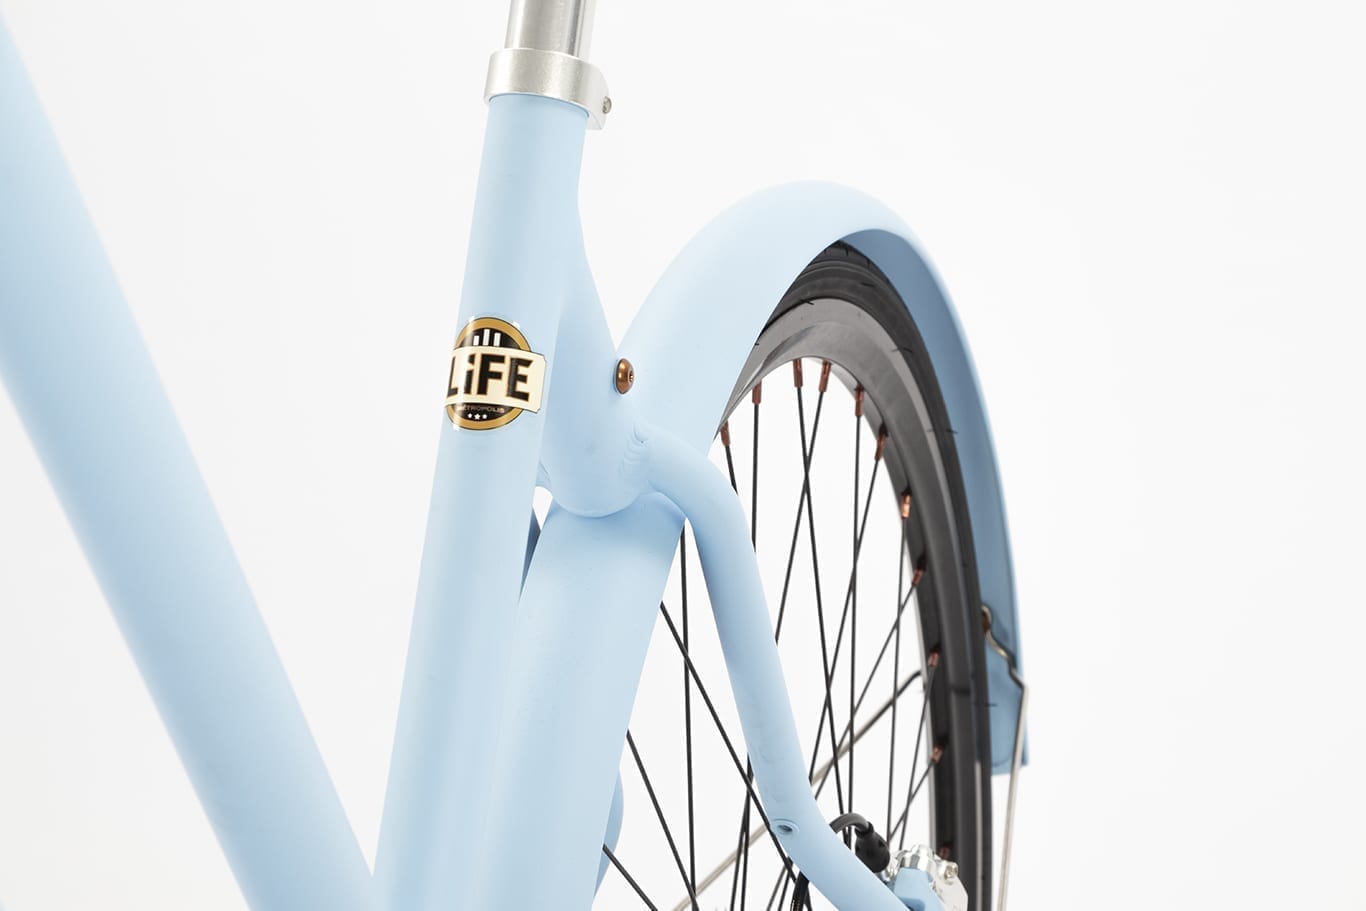 Vélo urbain LiFE Bleu de Ré Confort lignes courbes